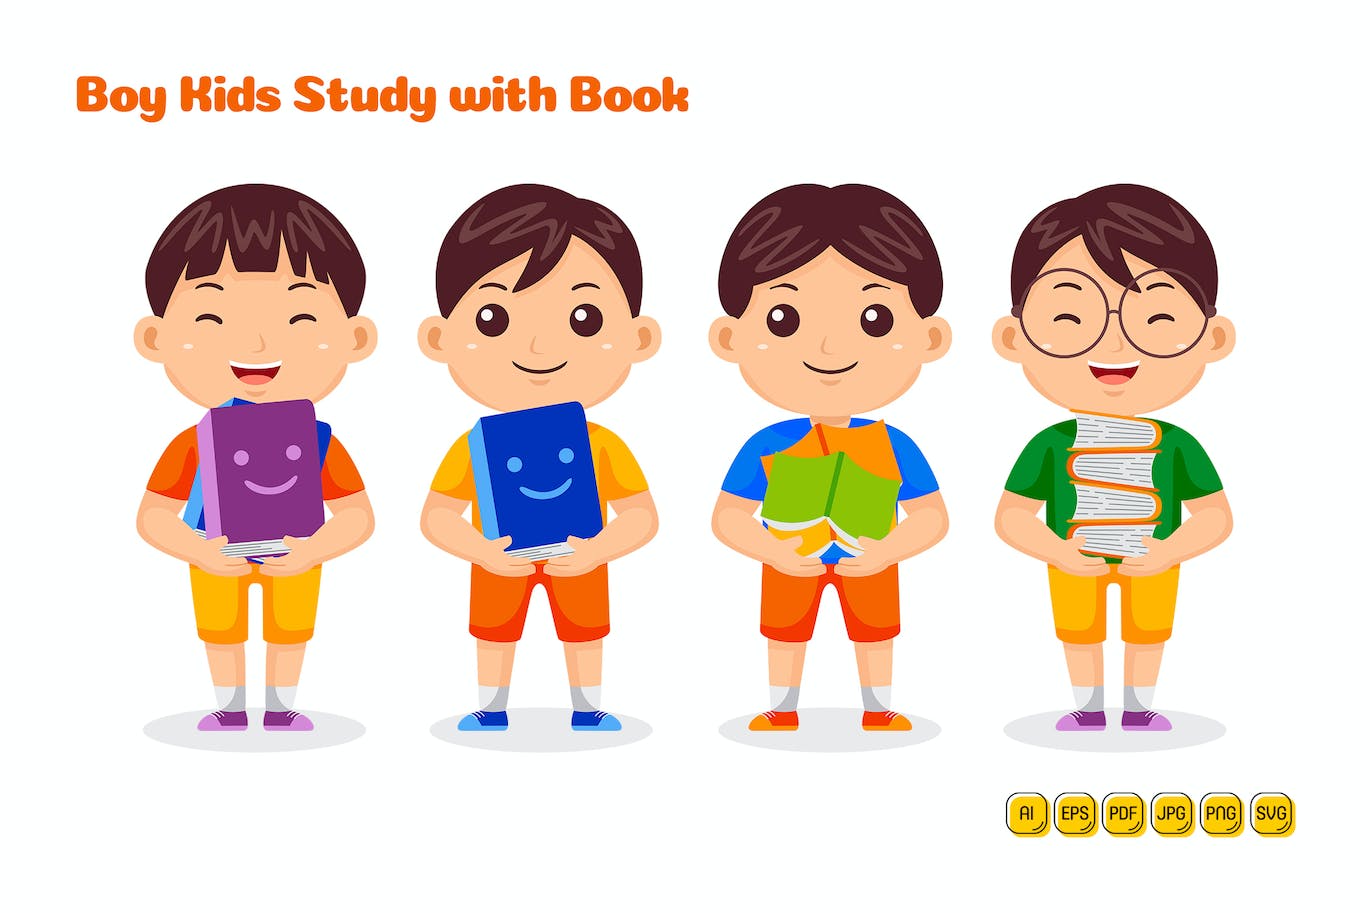 男孩儿童学习书籍矢量插画 Boy Kids Study with Book Vector Pack #01-1